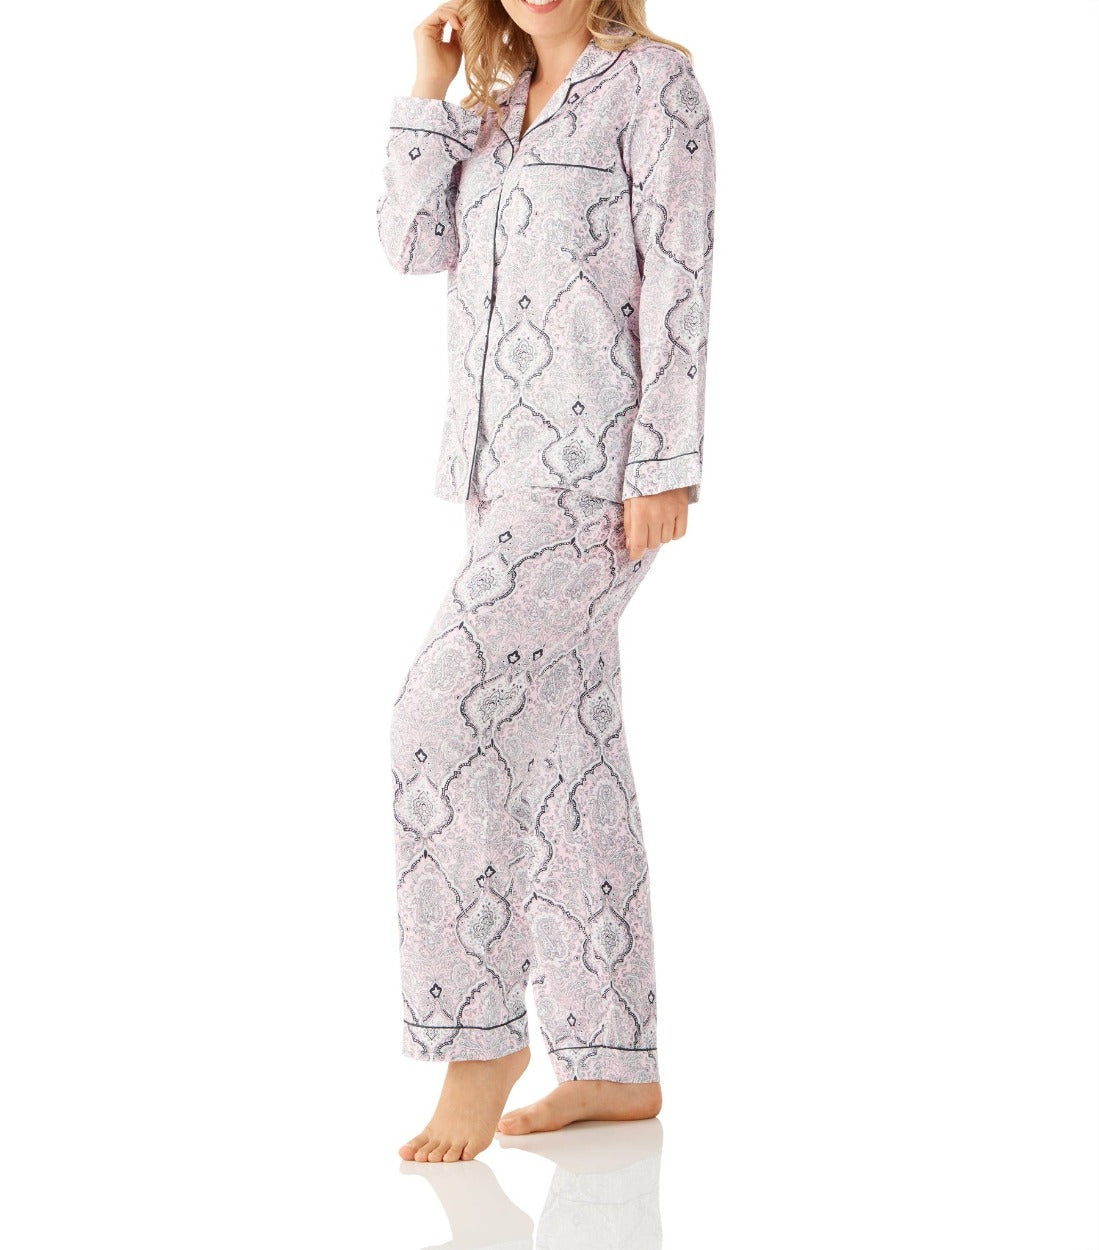 Women's Viscose Cotton Sateen Winter Pyjama Set | Shiva Viscose Cotton Pyjama Set | Magnolia Lounge Sleepwear Australia